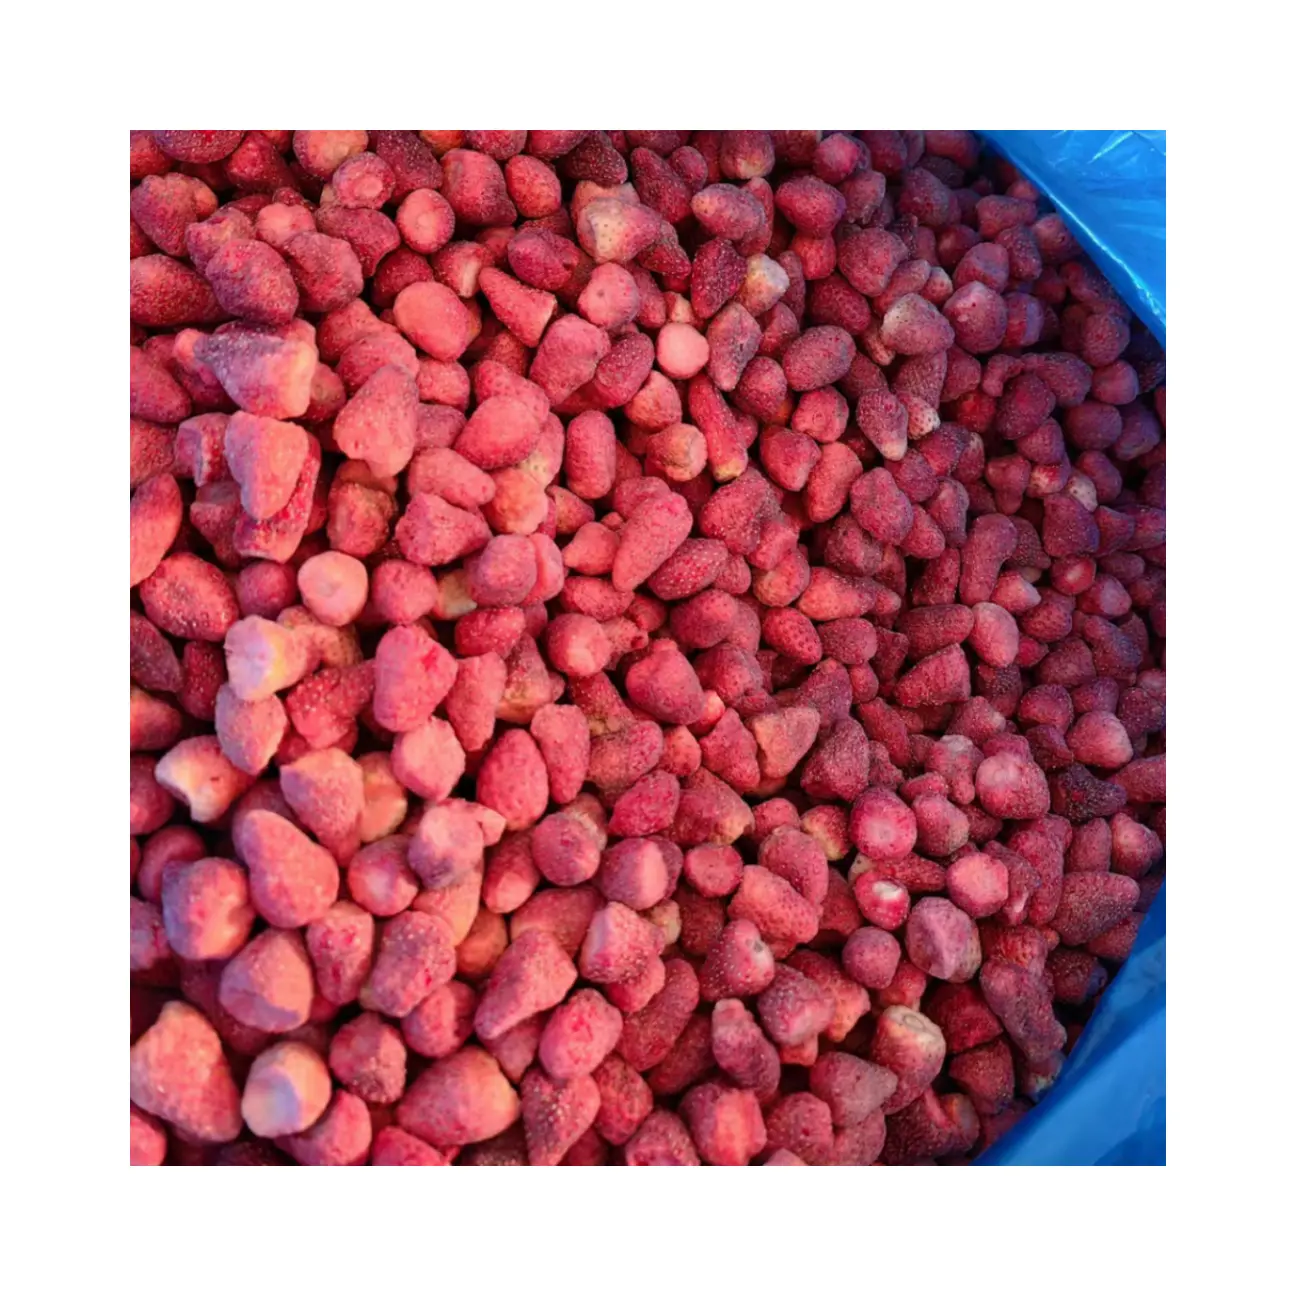 공장 도매 대량 동결 말린 혼합 과일 딸기 동결 말린 과일 브랜드 WXHT 프롬프트 배달 및 무료 샘플